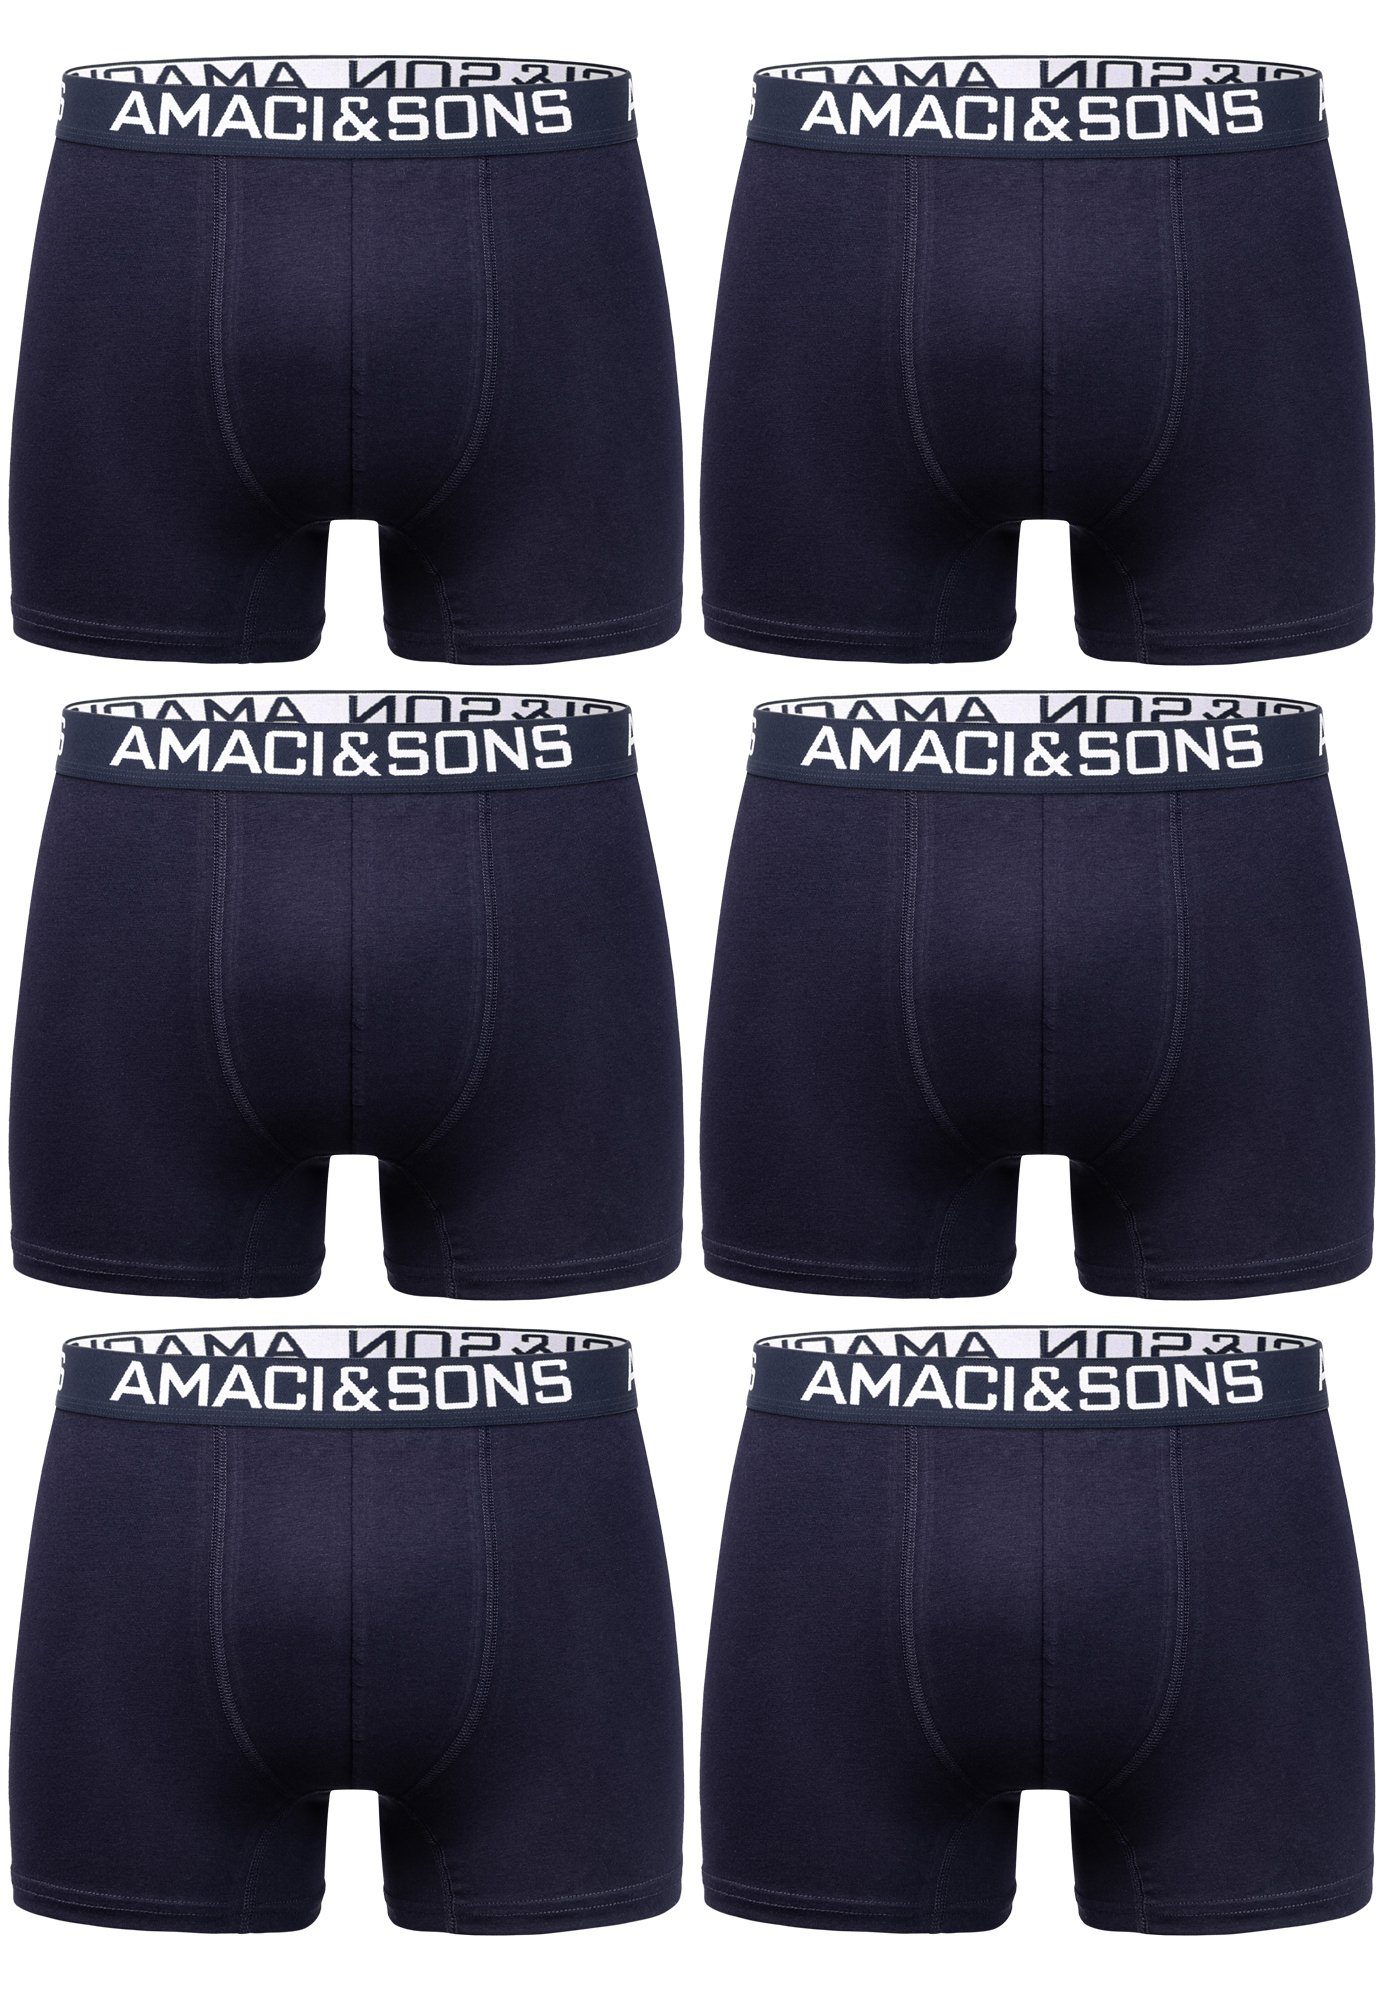 Amaci&Sons Boxershorts WESTON 6er Pack Boxershorts (6er-Pack) Herren Baumwolle Männer Unterhose Unterwäsche Navyblau/Navyblau